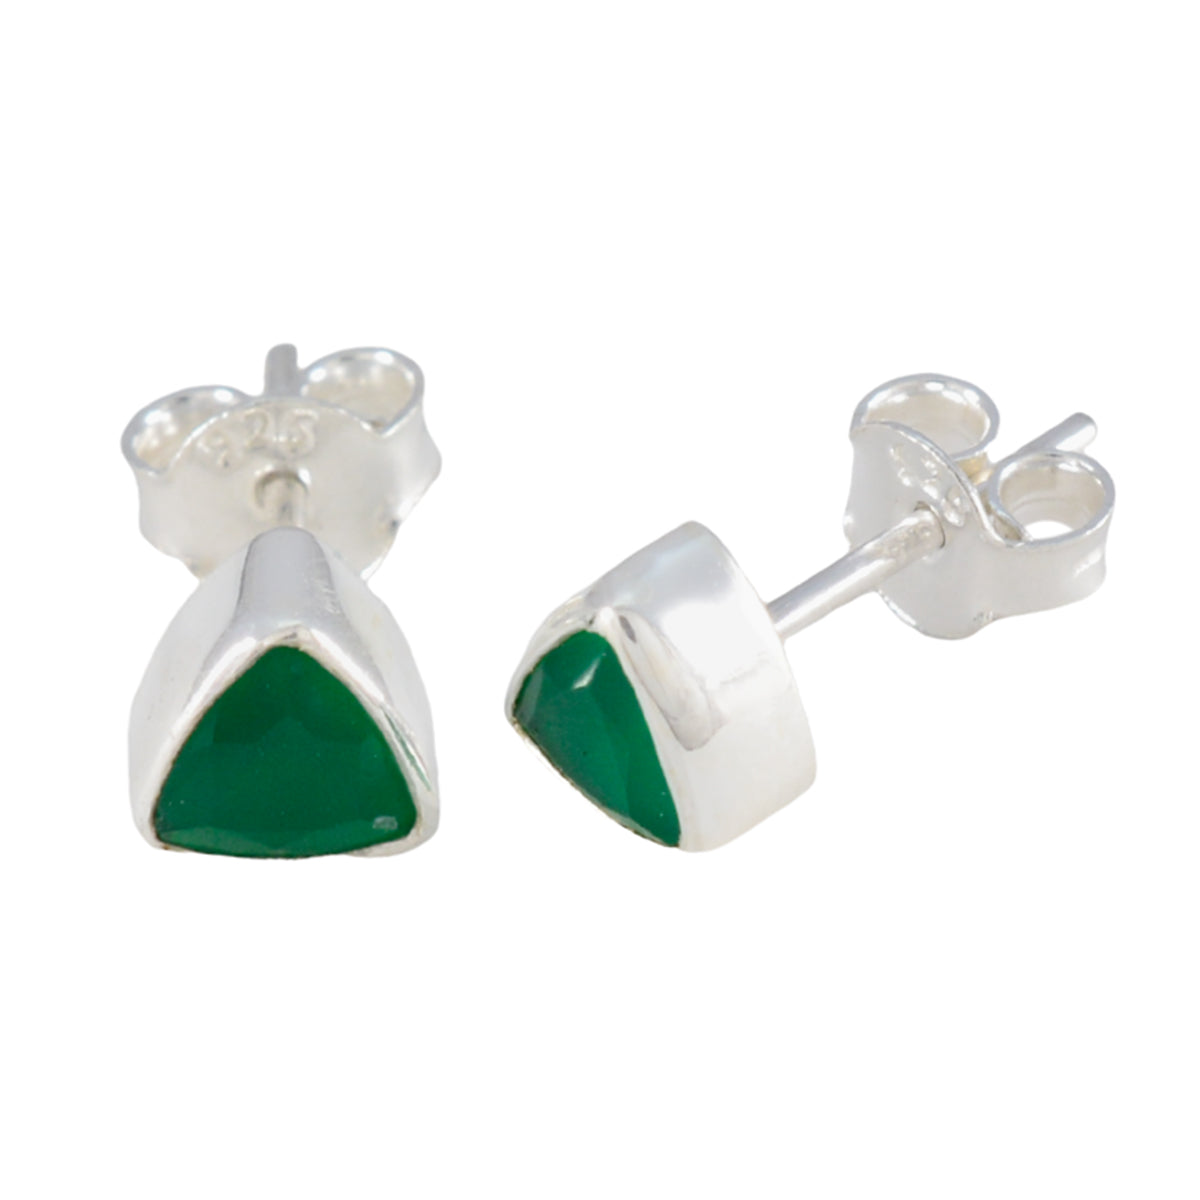 Riyo – boucle d'oreille en argent sterling pour femme, onyx vert, réglage de la lunette, boucle d'oreille verte